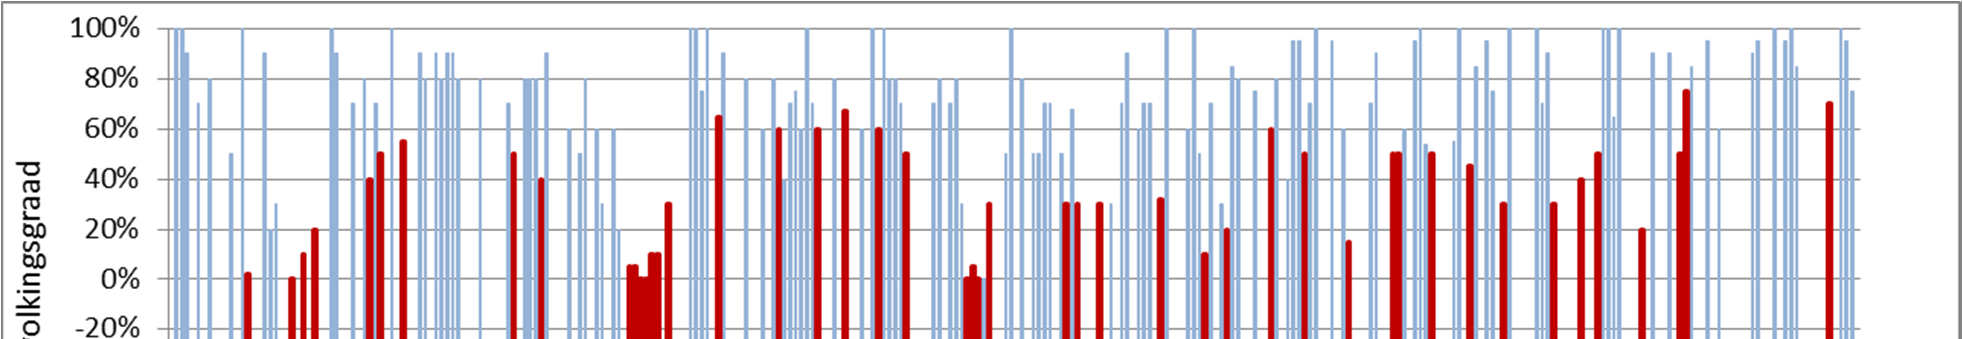 DMC dataset 2012-2013 DMC beelden van 2012 in